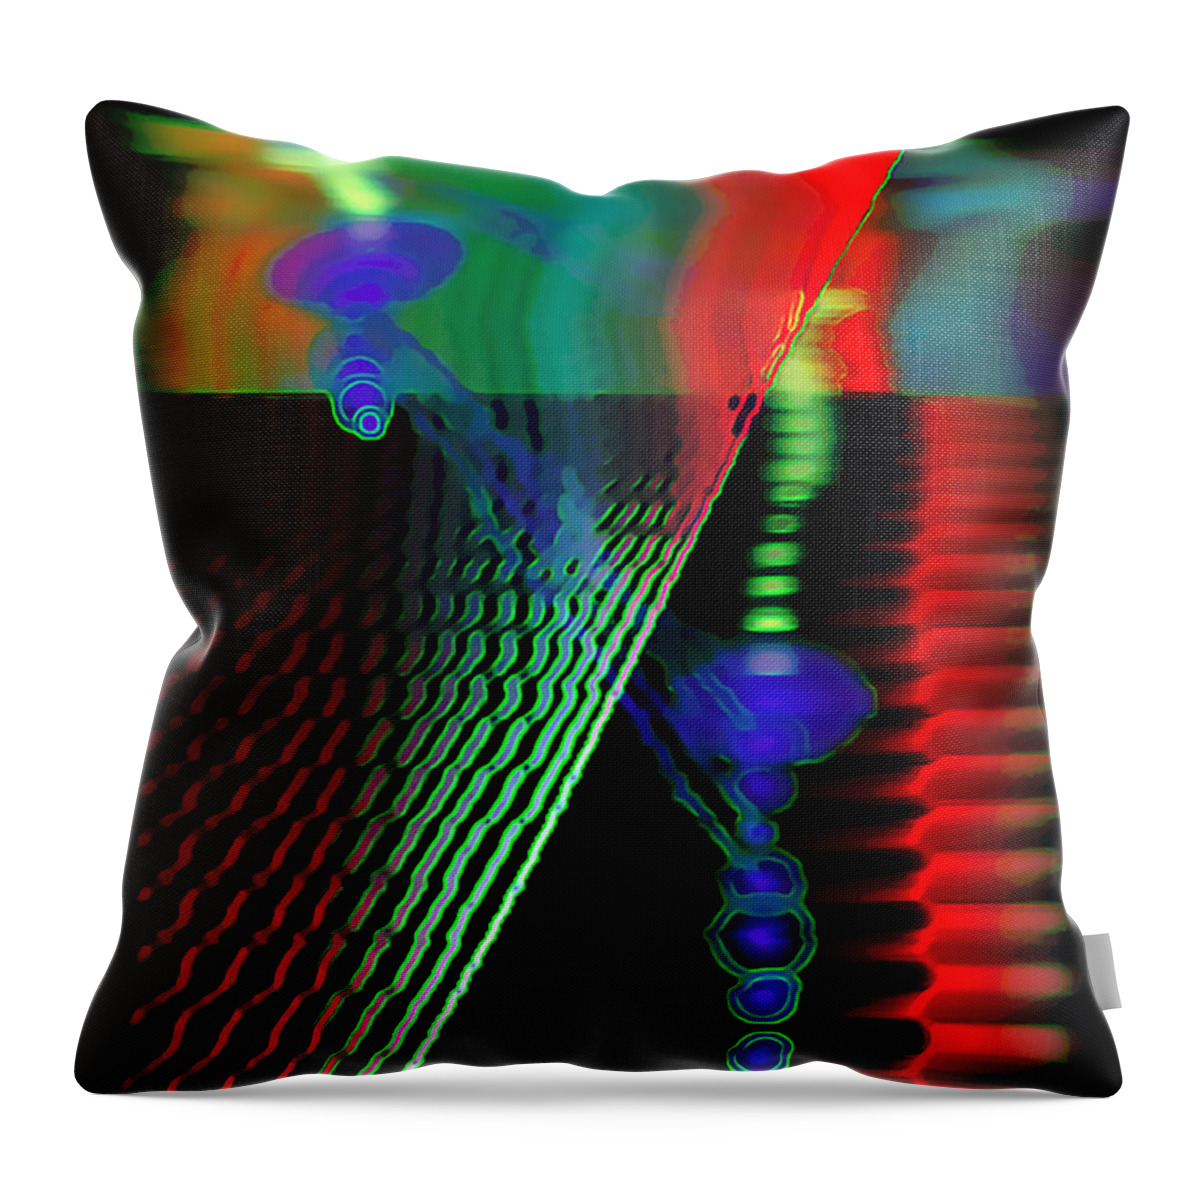 Digital Art Throw Pillow featuring the digital art Jagg3D 3Dge by Fli Art